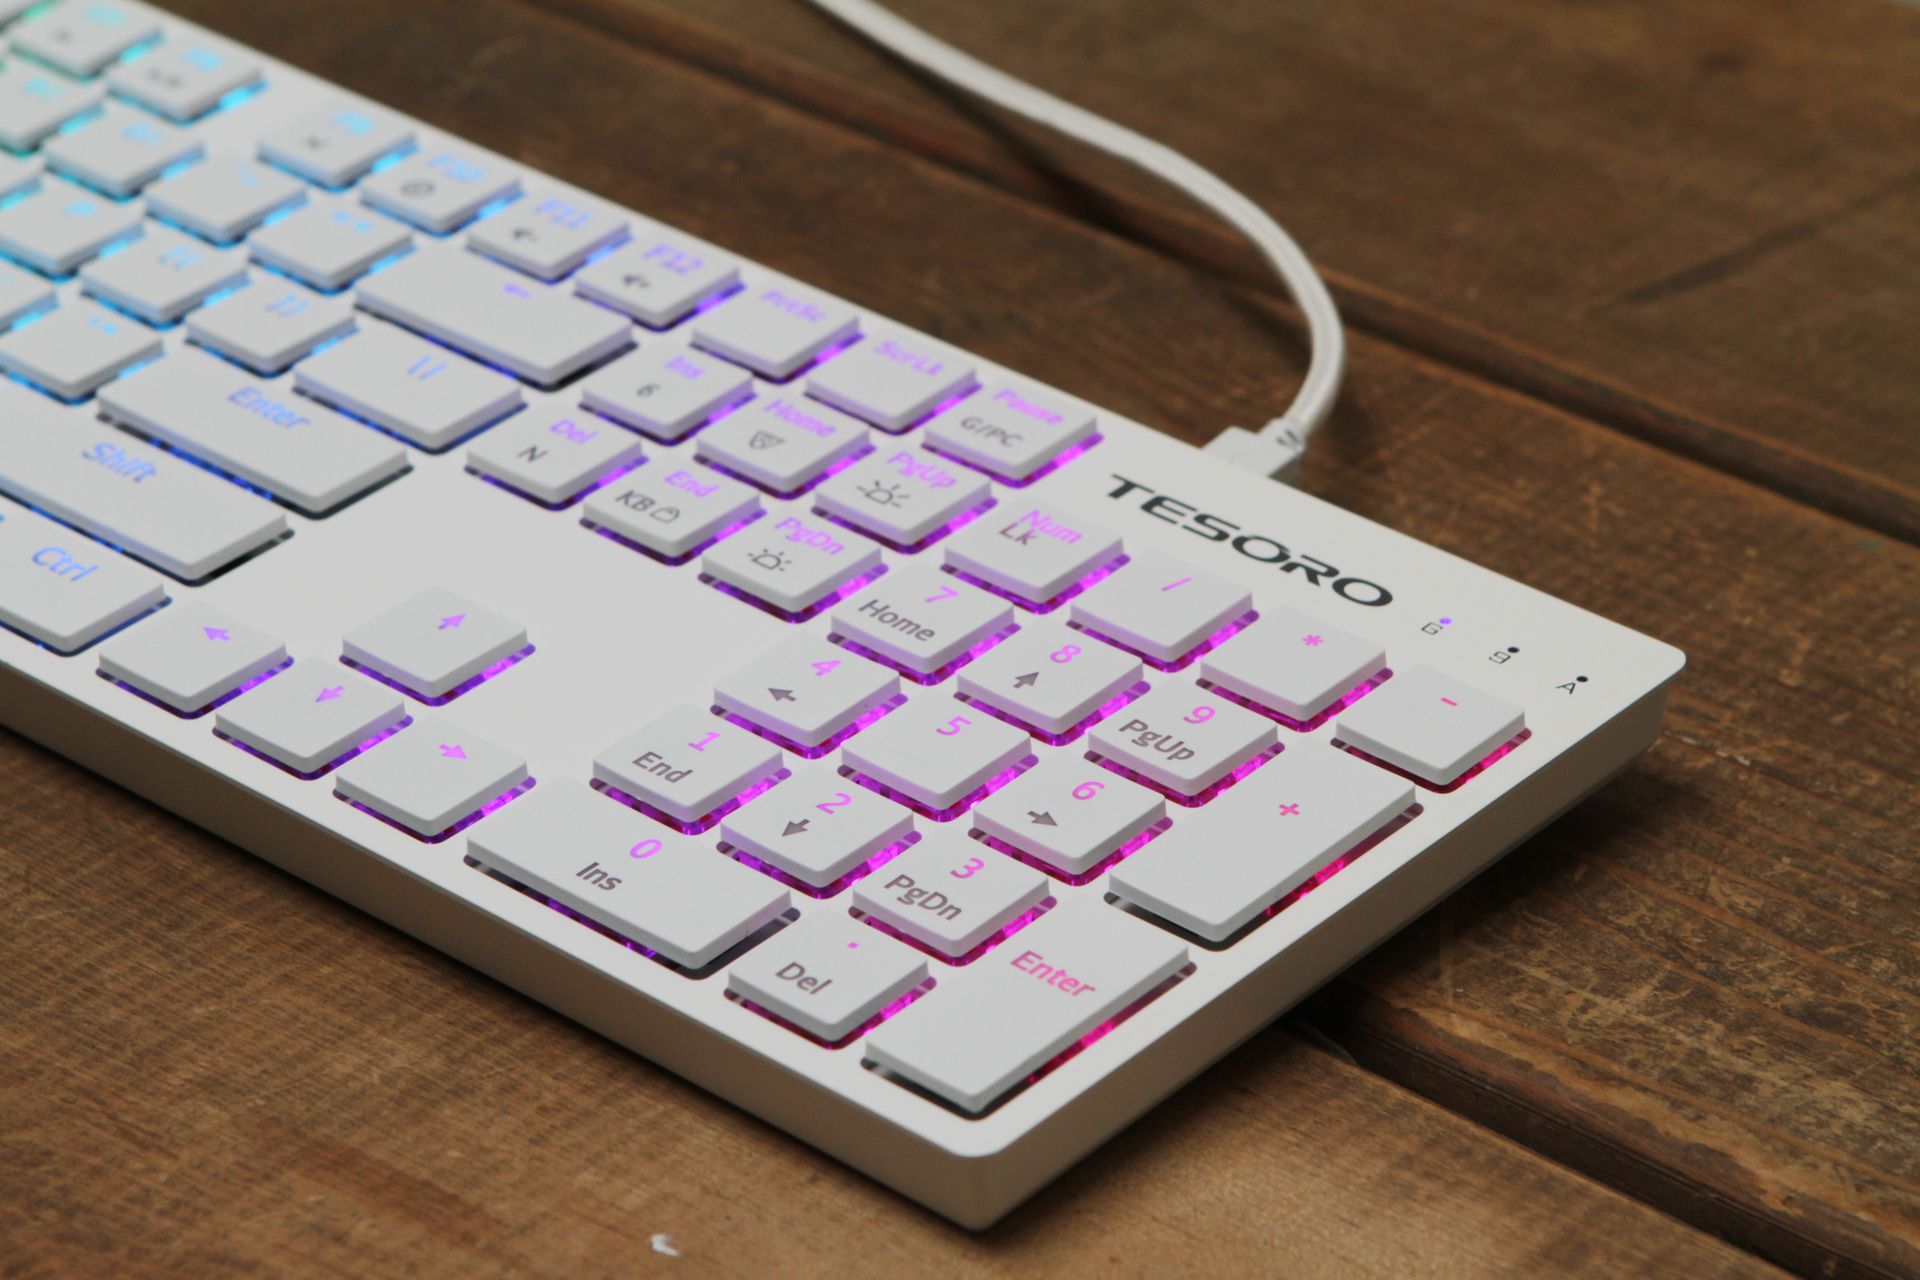 Tesoro Gram XS Keyboard Review: Low-Profile Keys, Stunning White Design